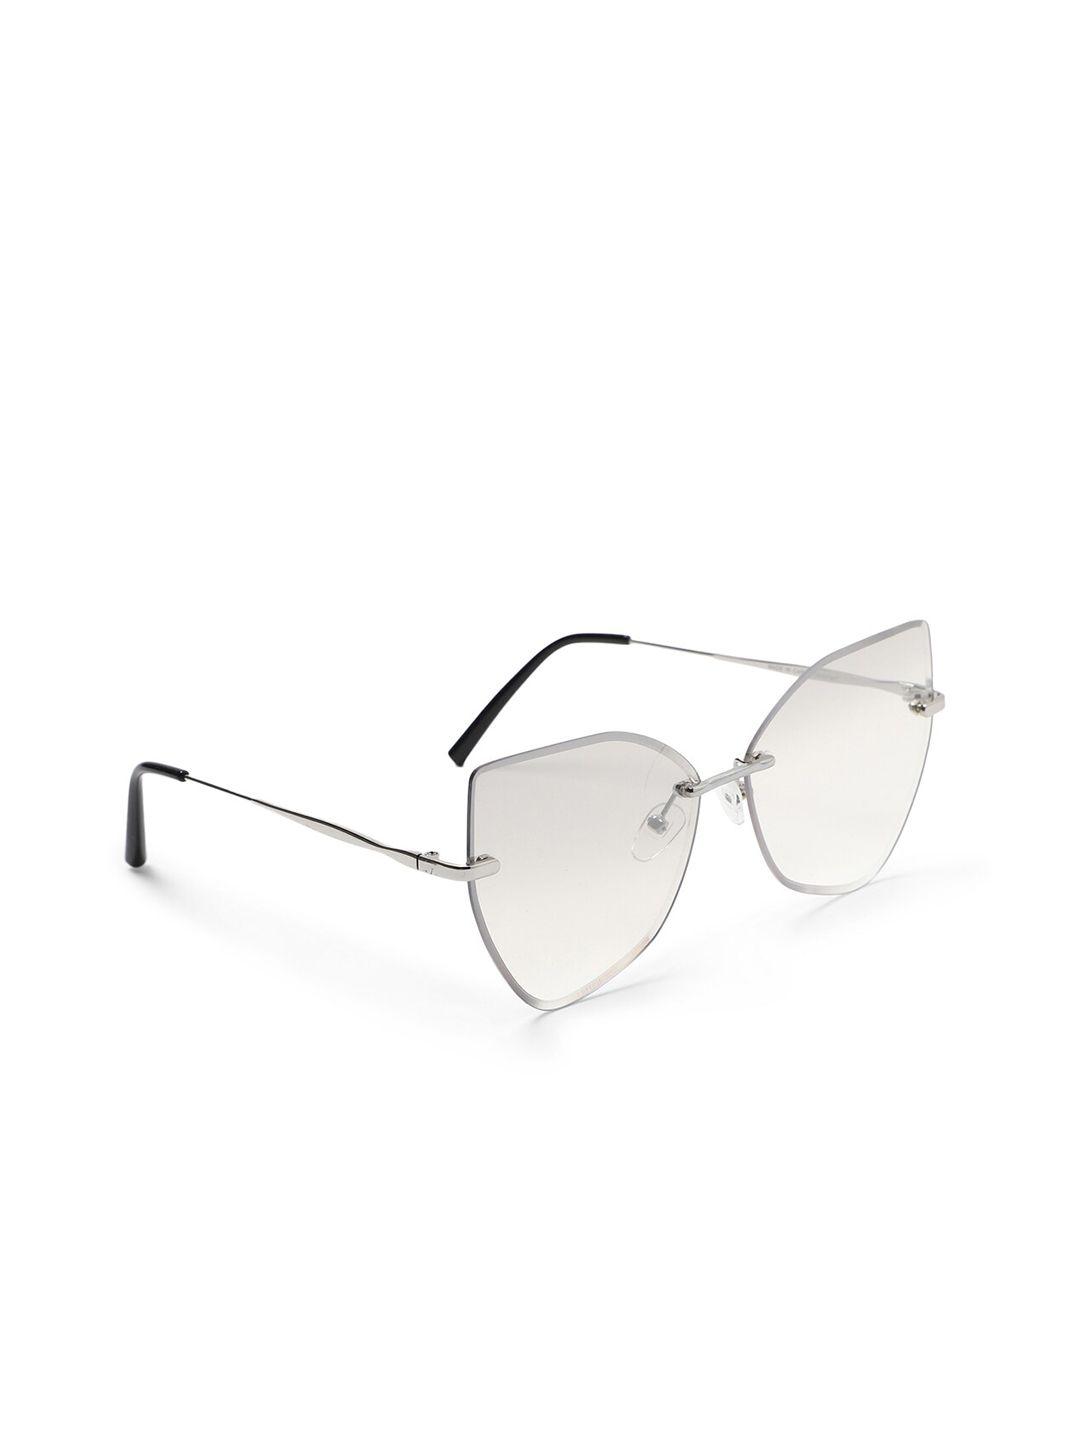 forever-21-women-clear-lens-&-black-cateye-sunglasses